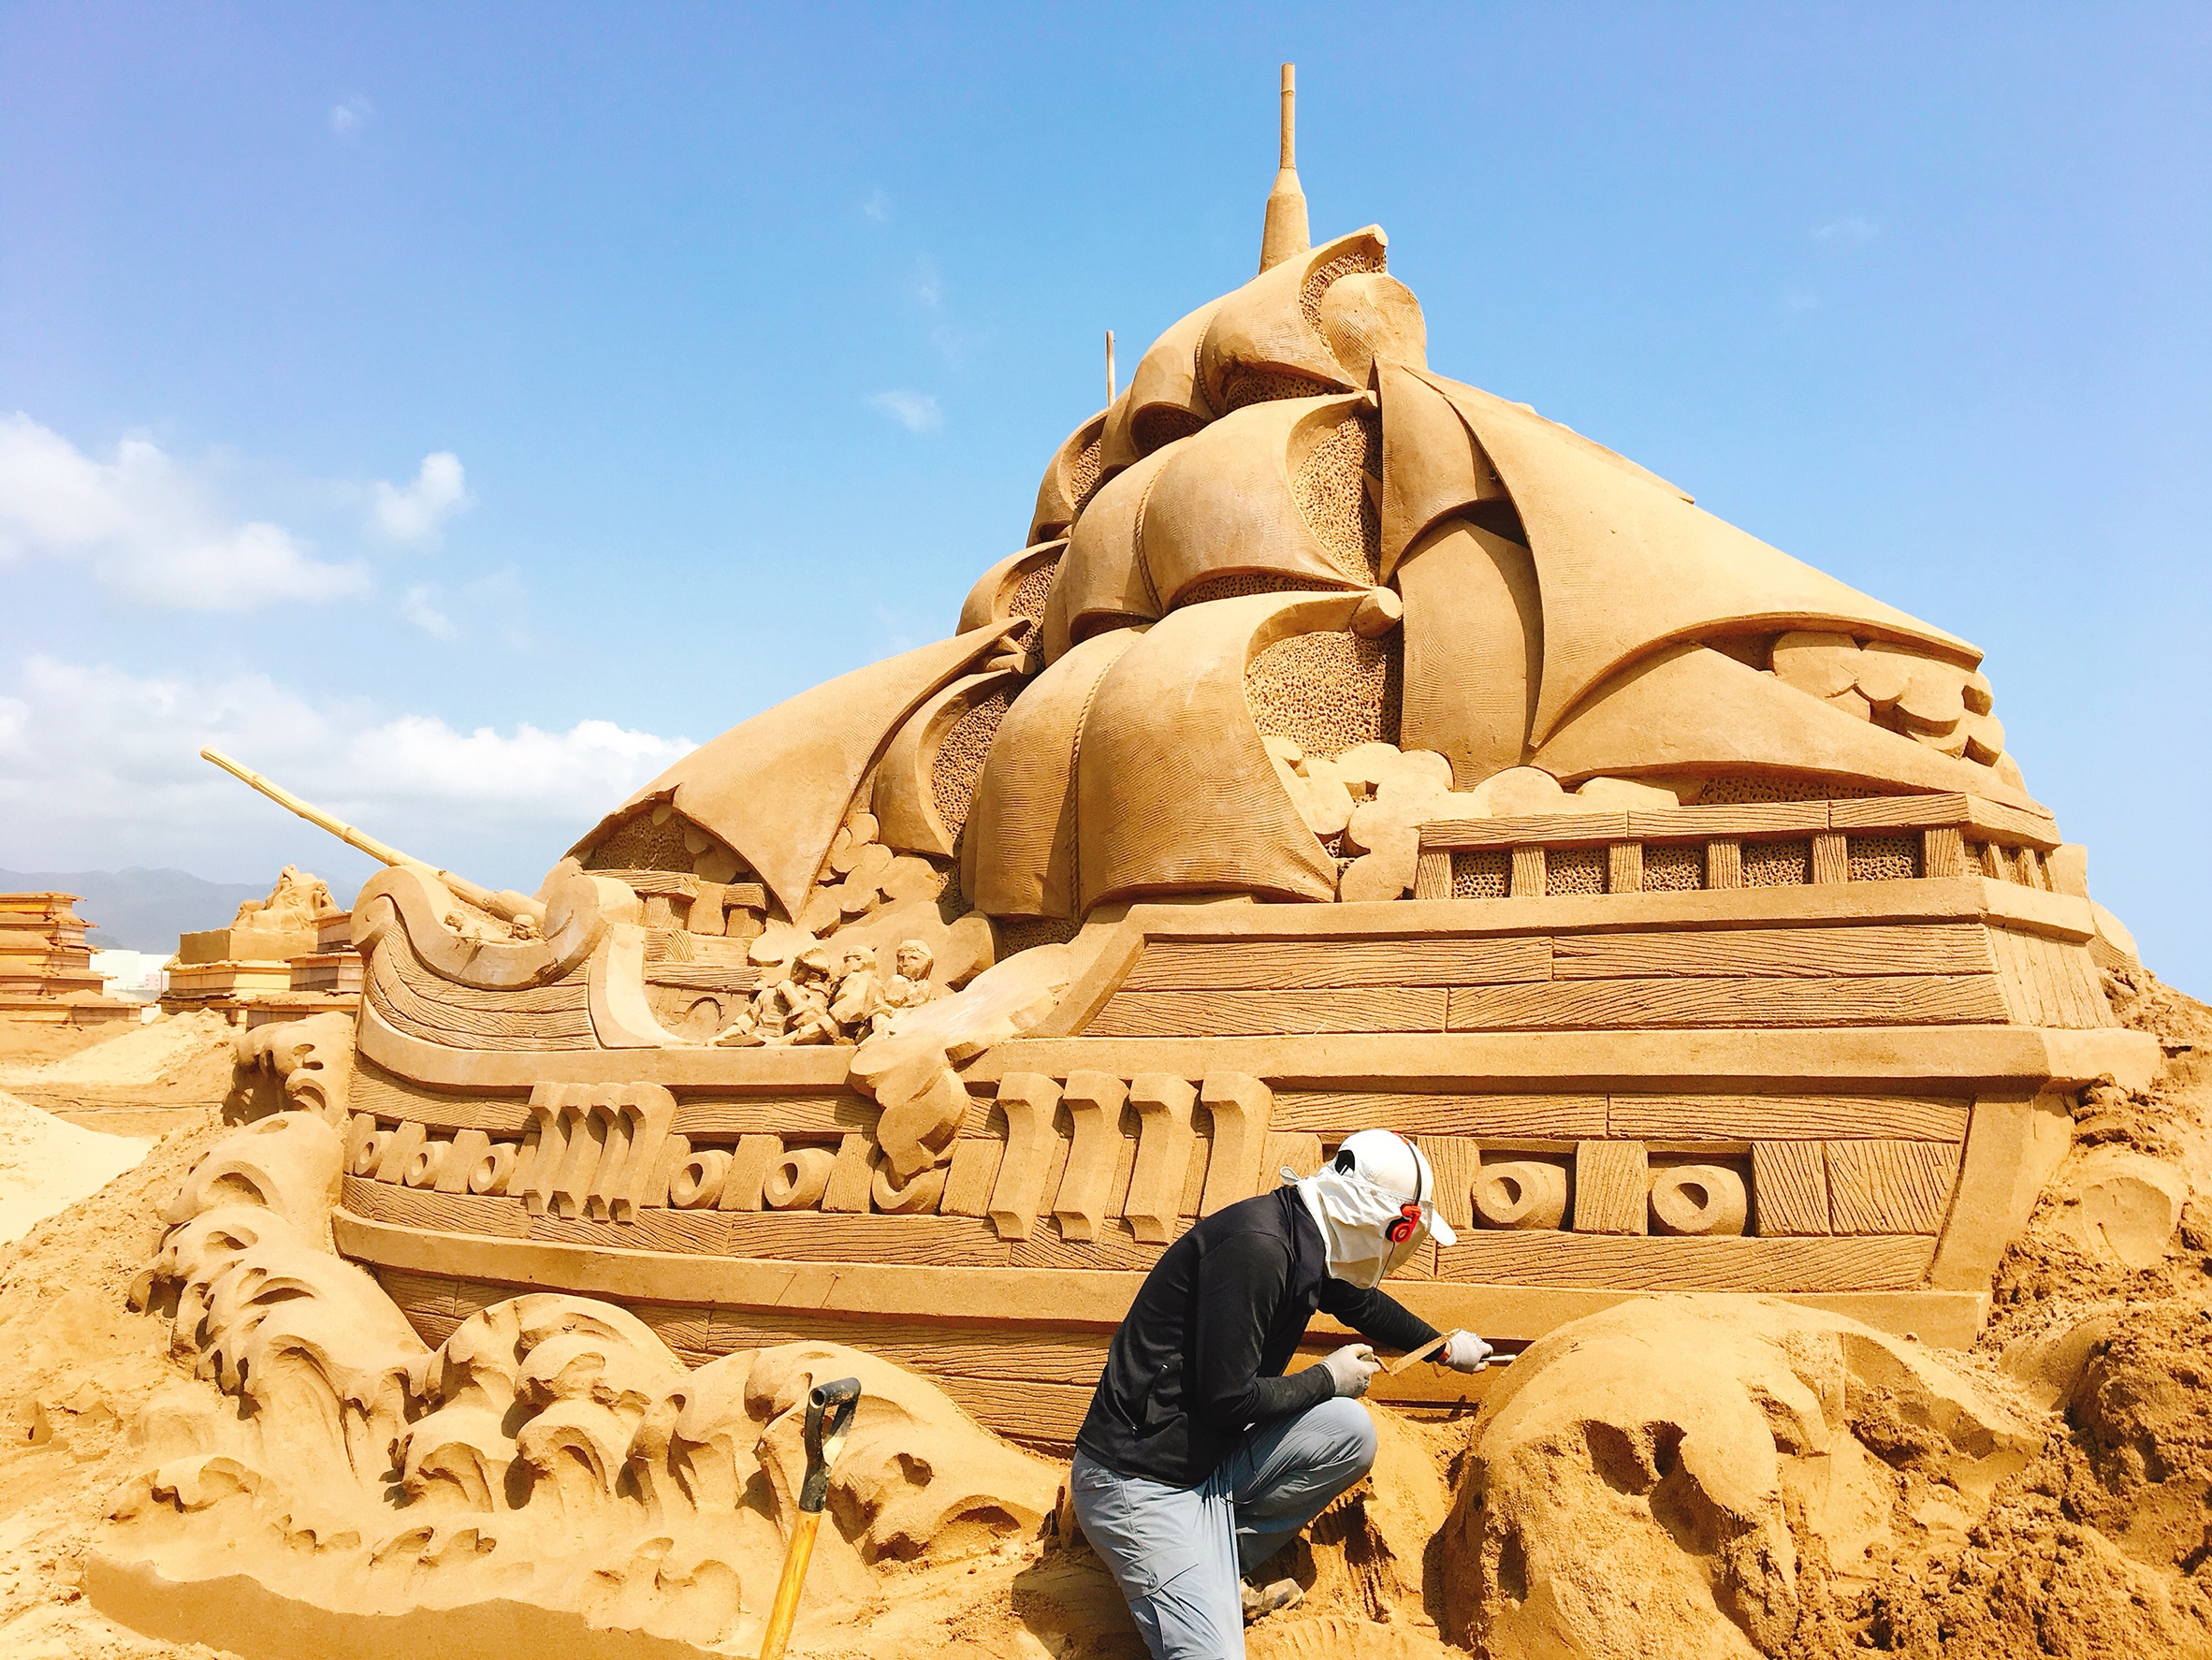 2018 Fulong International Sand Sculpture Art Musim Patung Pasir